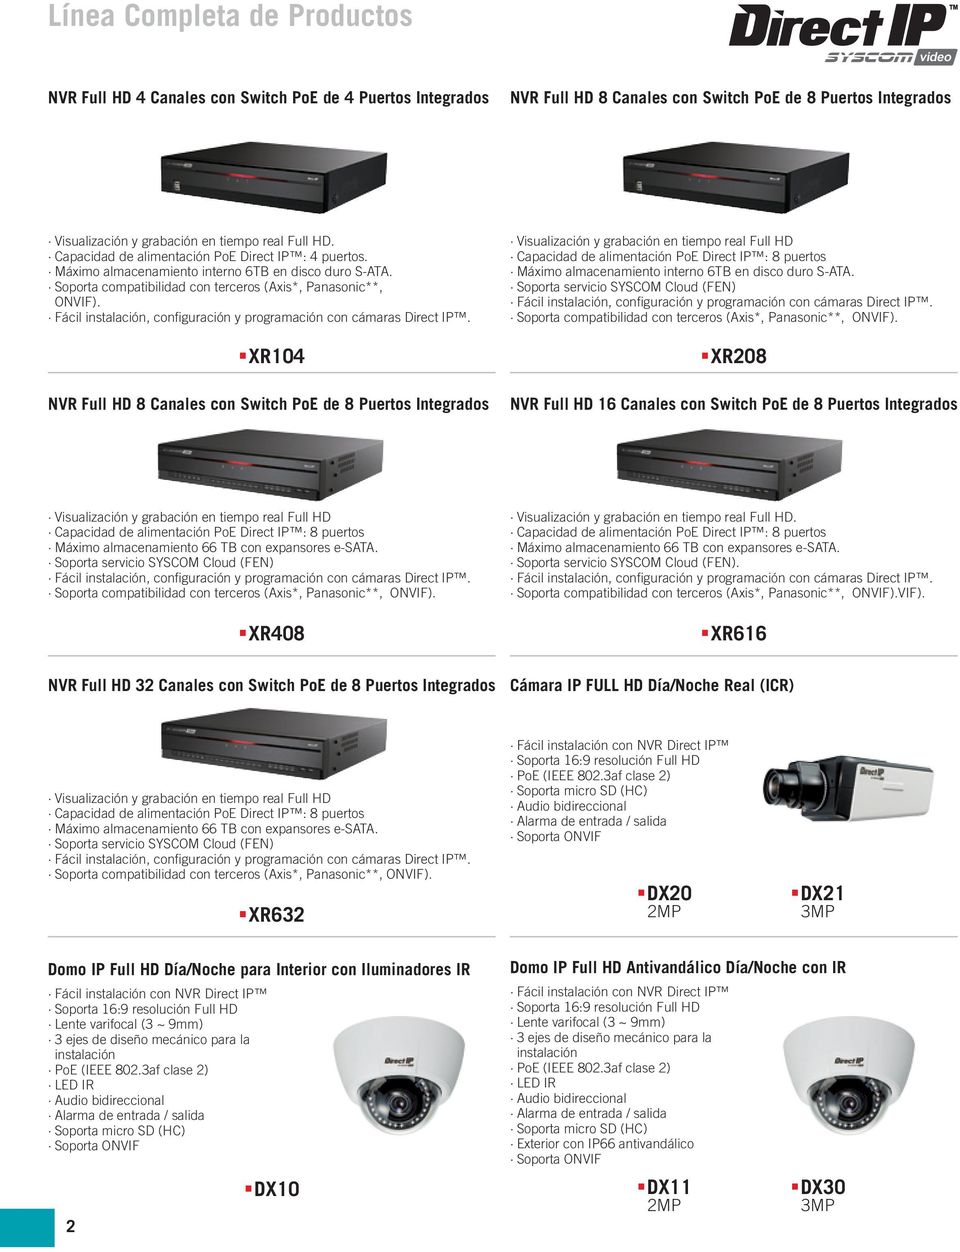 XR104 NVR Full HD 8 Canales con Switch PoE de 8 Puertos Integrados Visualización y grabación en tiempo real Full HD Capacidad de alimentación PoE Direct IP : 8 puertos Máximo almacenamiento interno